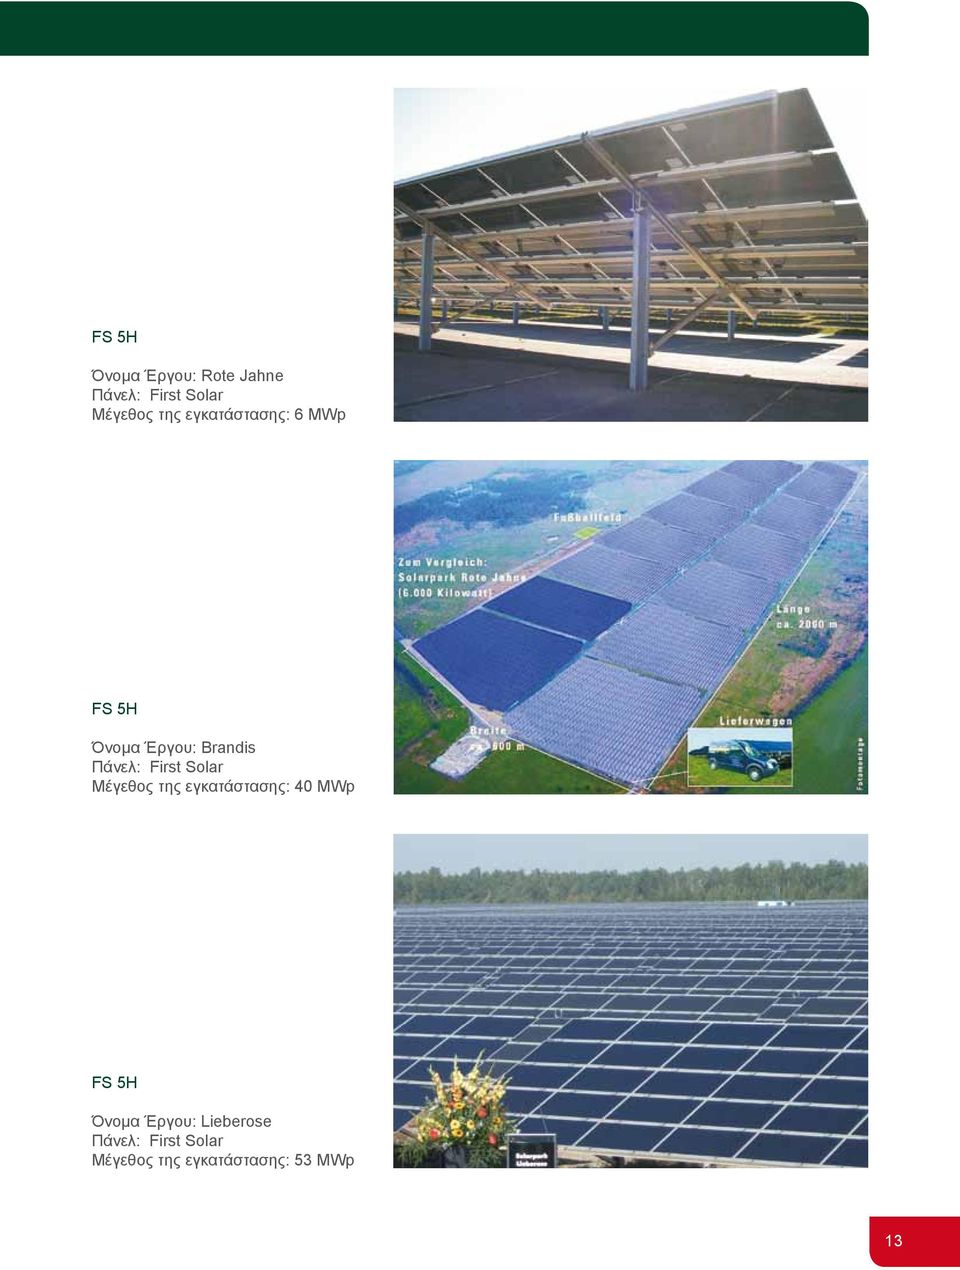 Solar Mέγεθος της εγκατάστασης: 40 MWp FS 5H Όνομα Έργου: